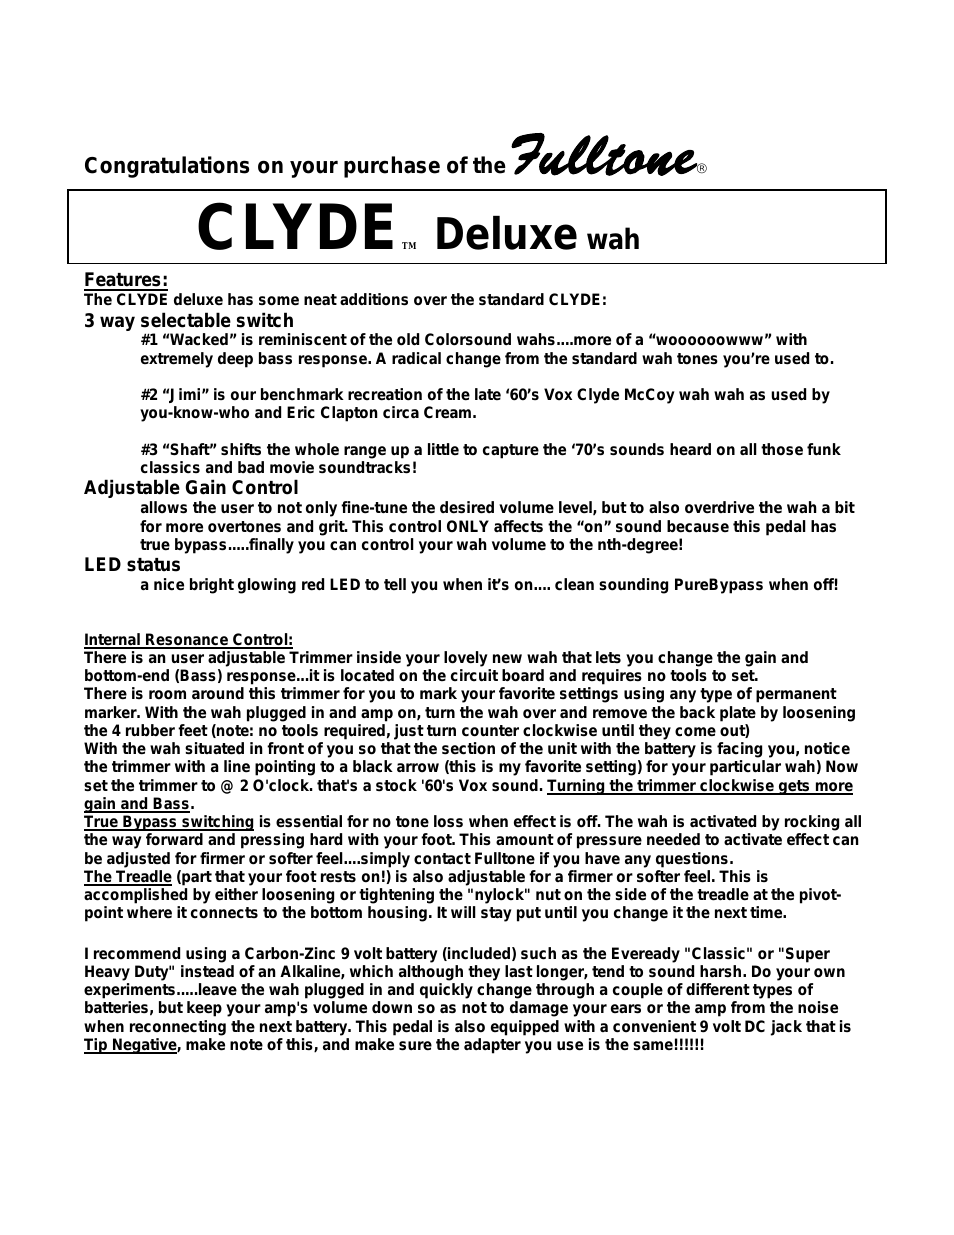 Clyde Deluxe Wah